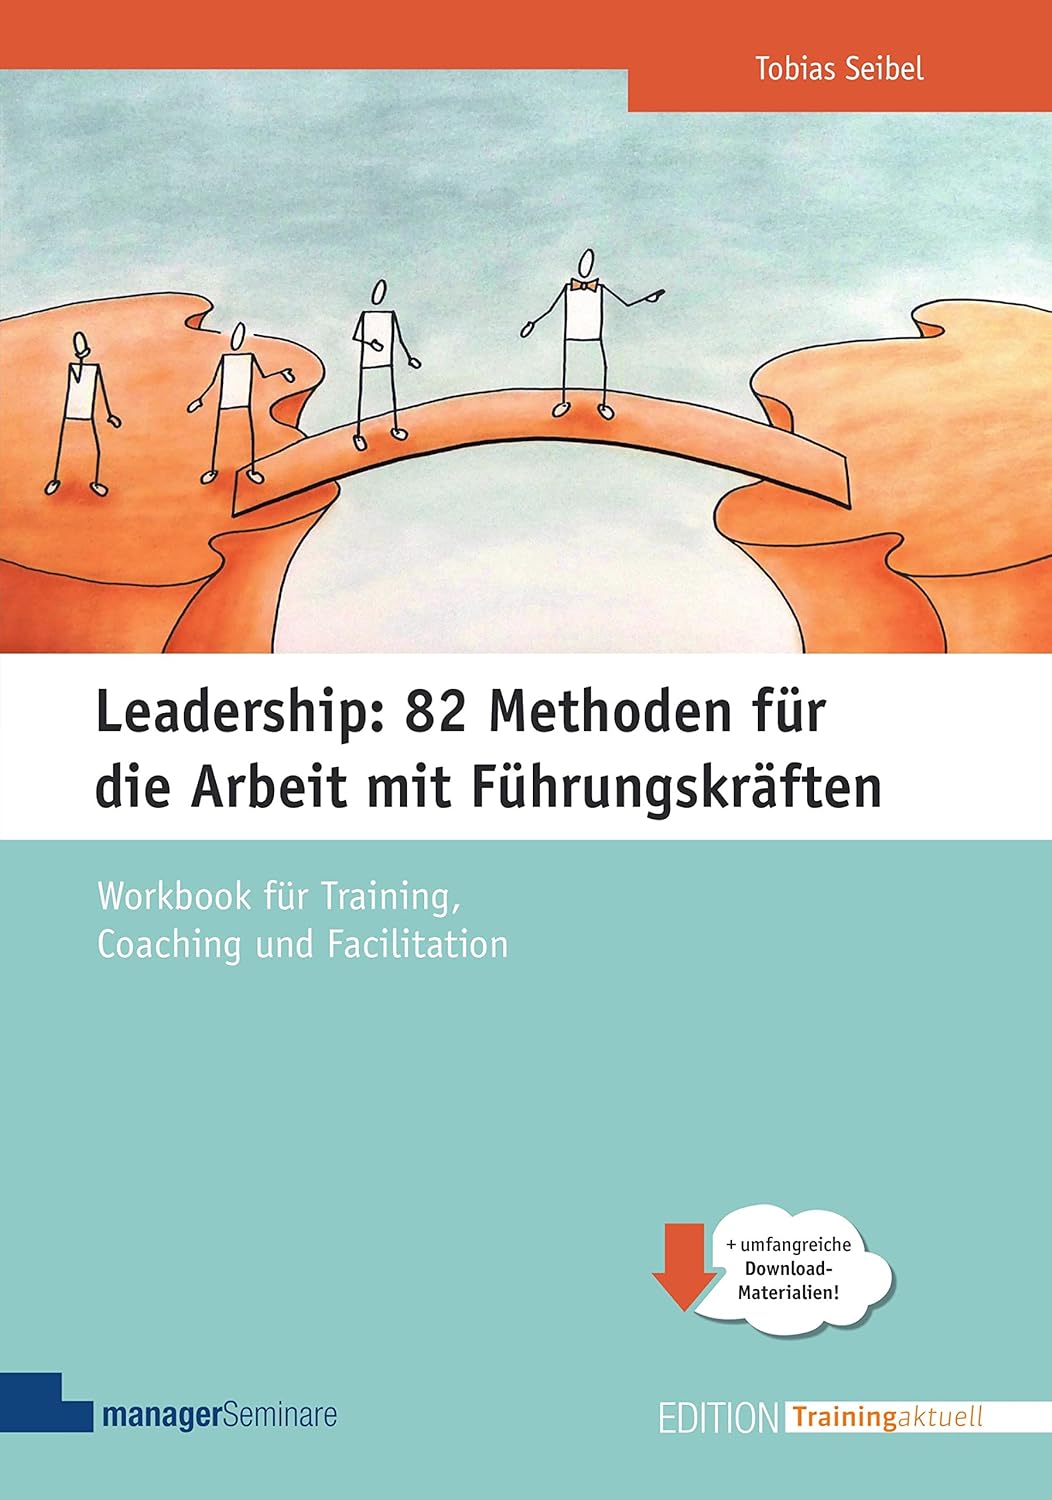 Leadership: 82 Methoden für Workshops